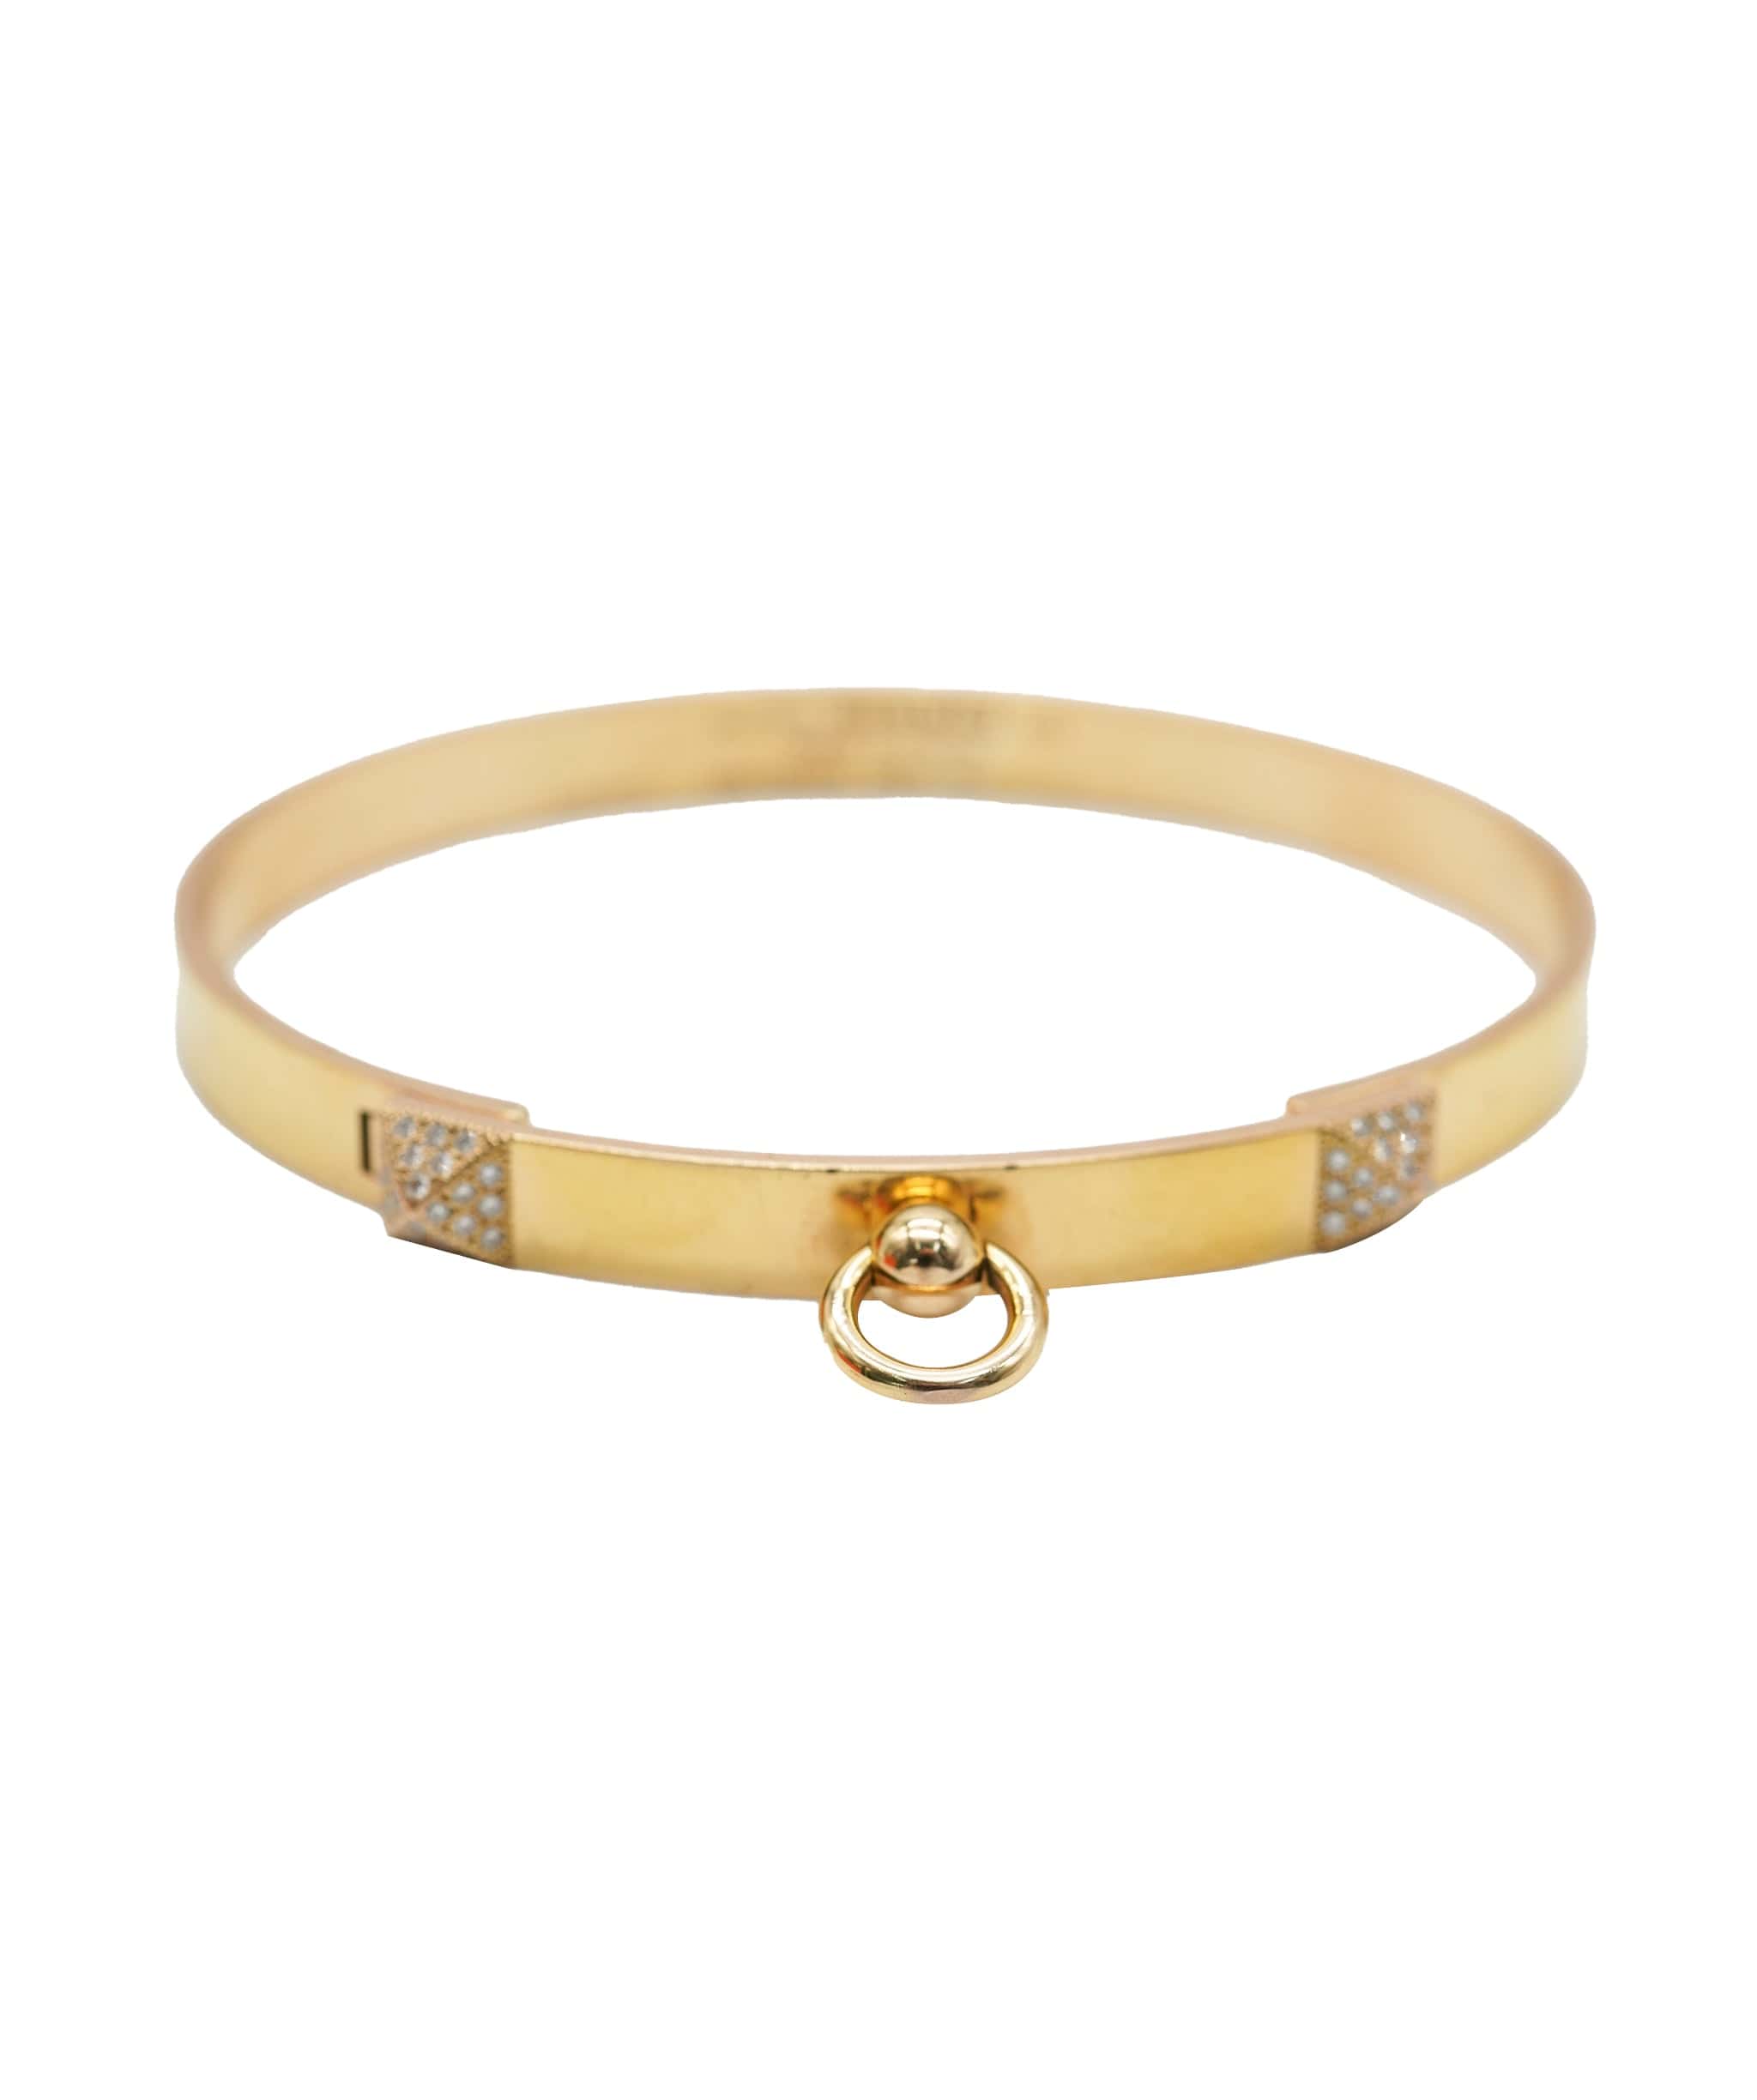 Hermès Hermès Collier De Chien 18K Rose Gold and diamond Bracelet, Small Model ABC0539